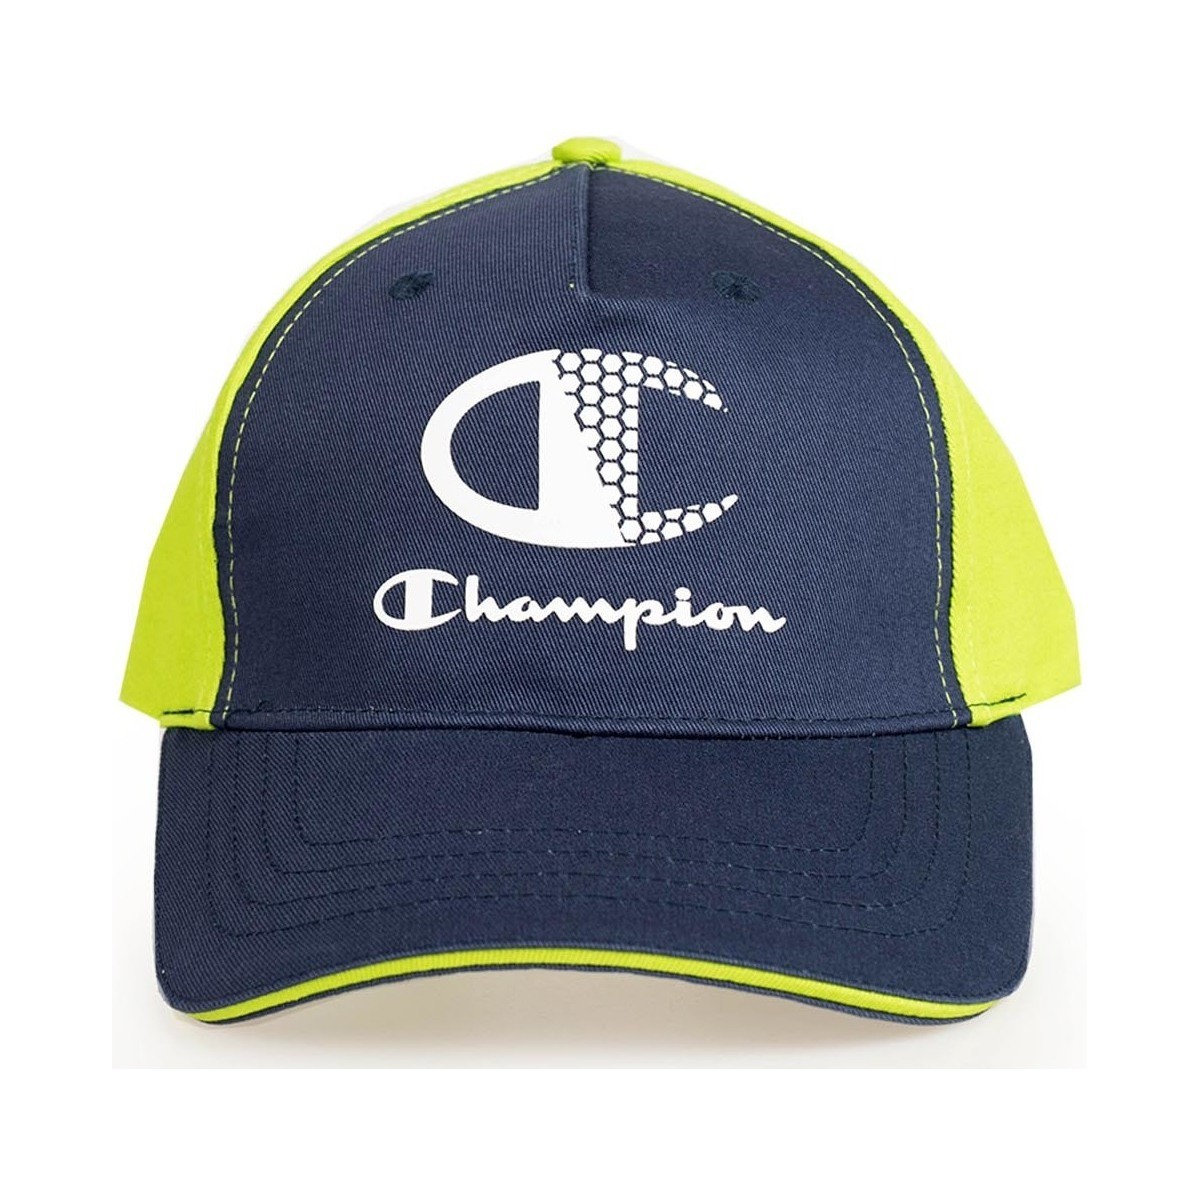 Textil kiegészítők Férfi Baseball sapkák Champion 804236 Zöld